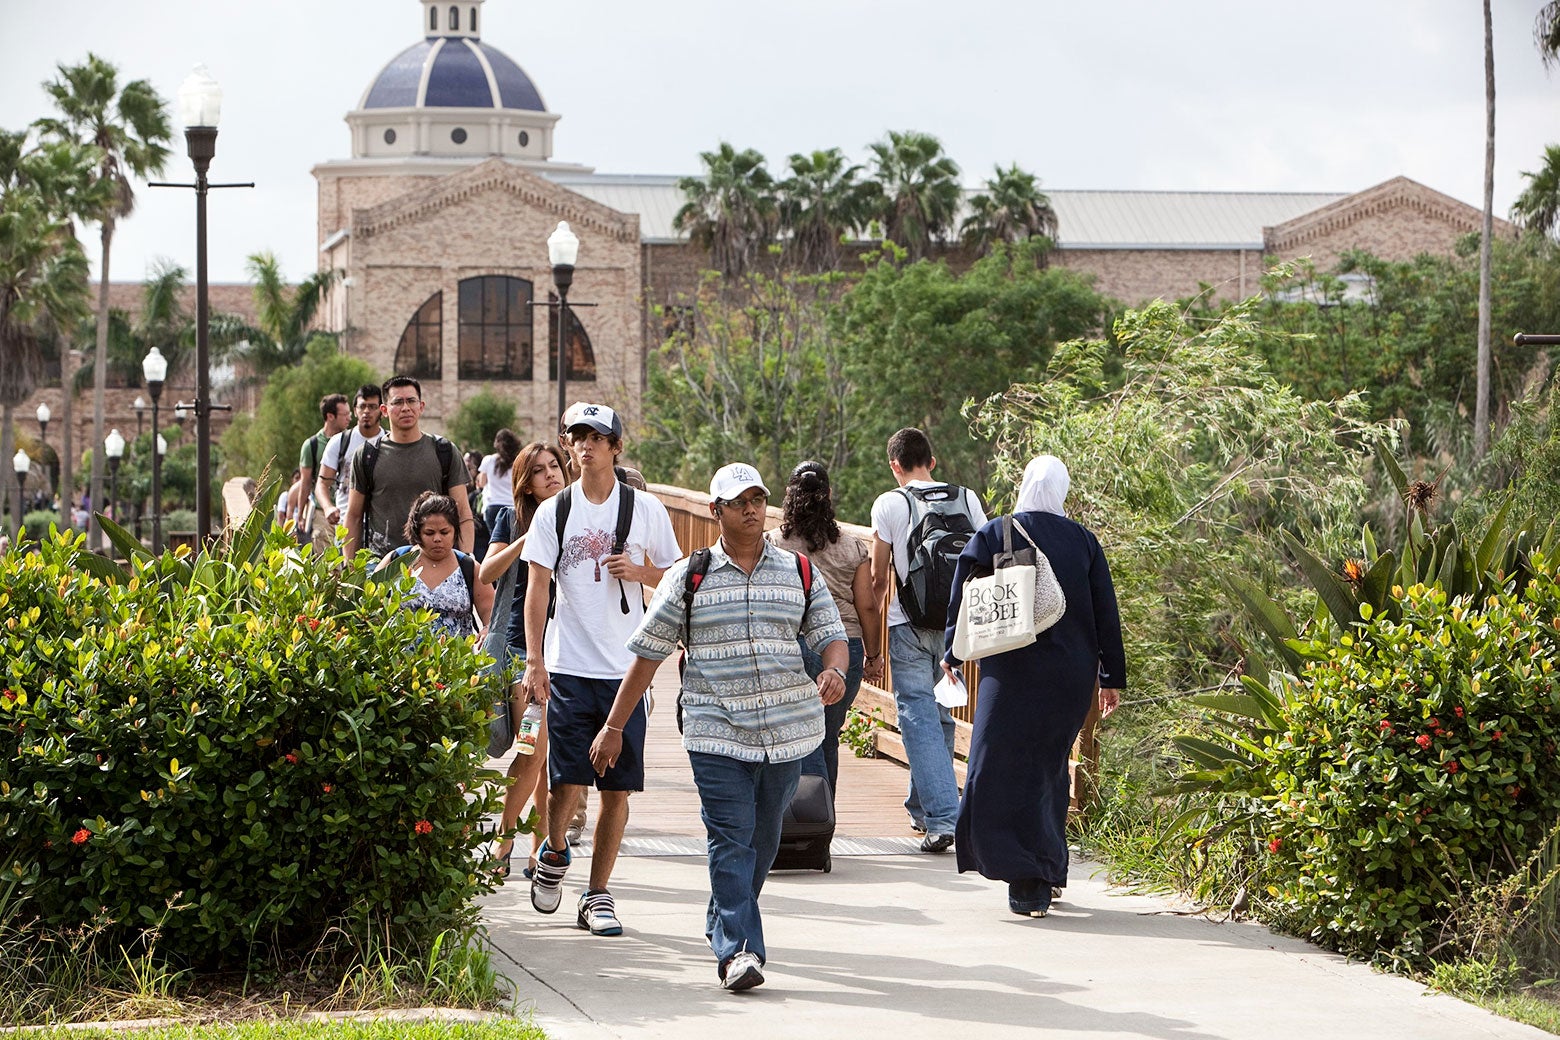 Students walk down a sidewalk on a campus.